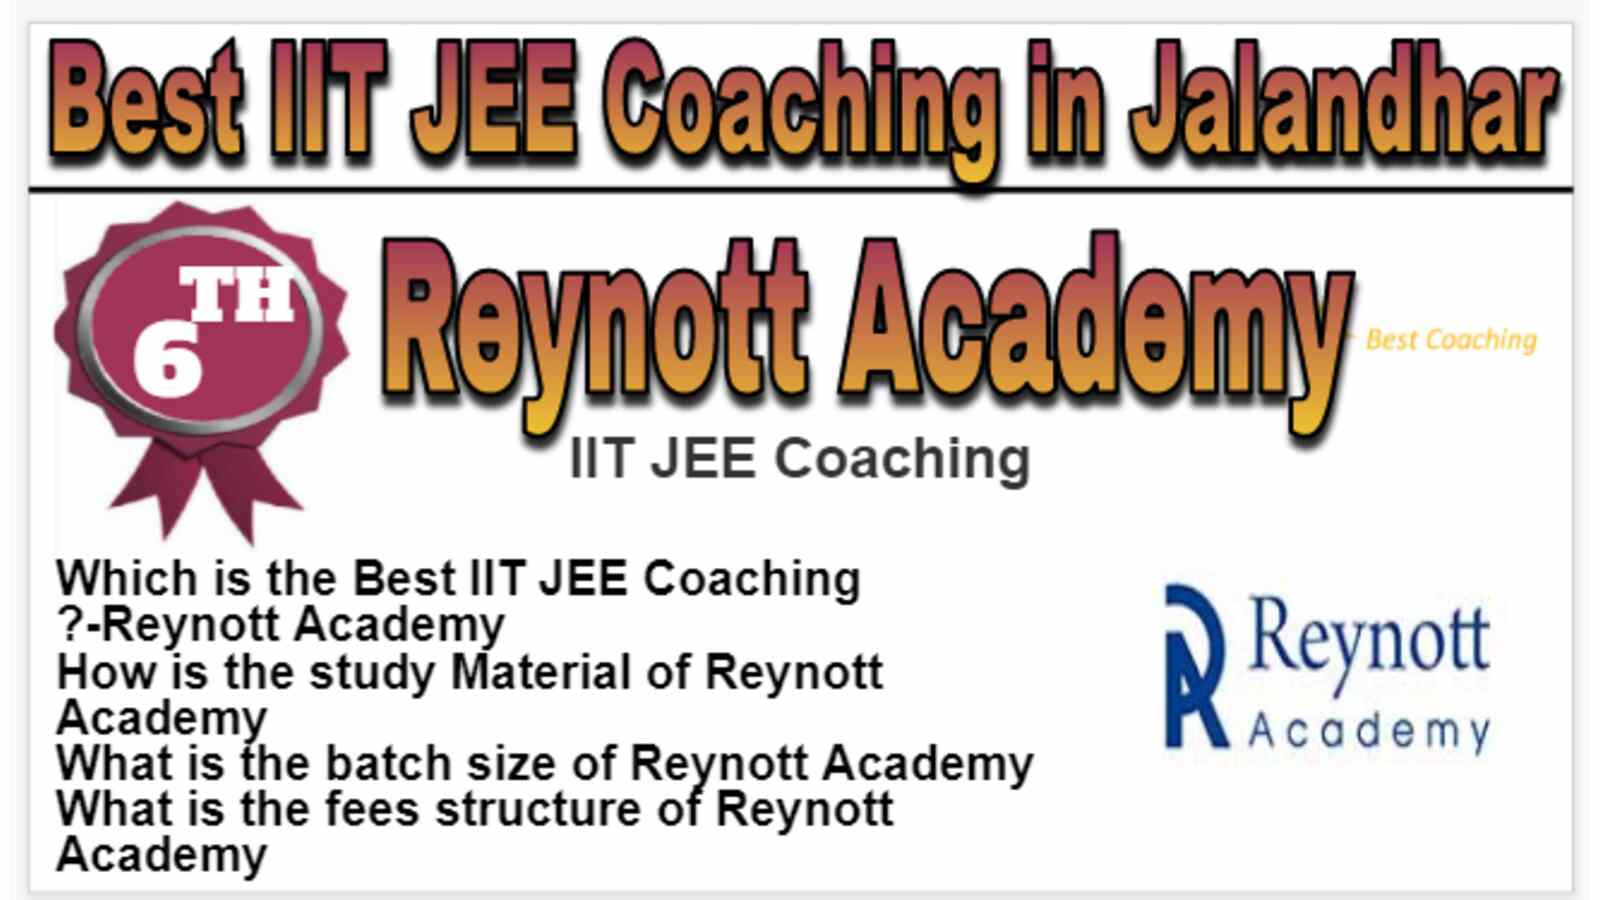 Rank 6 Best IIT JEE Coaching in Jalandhar